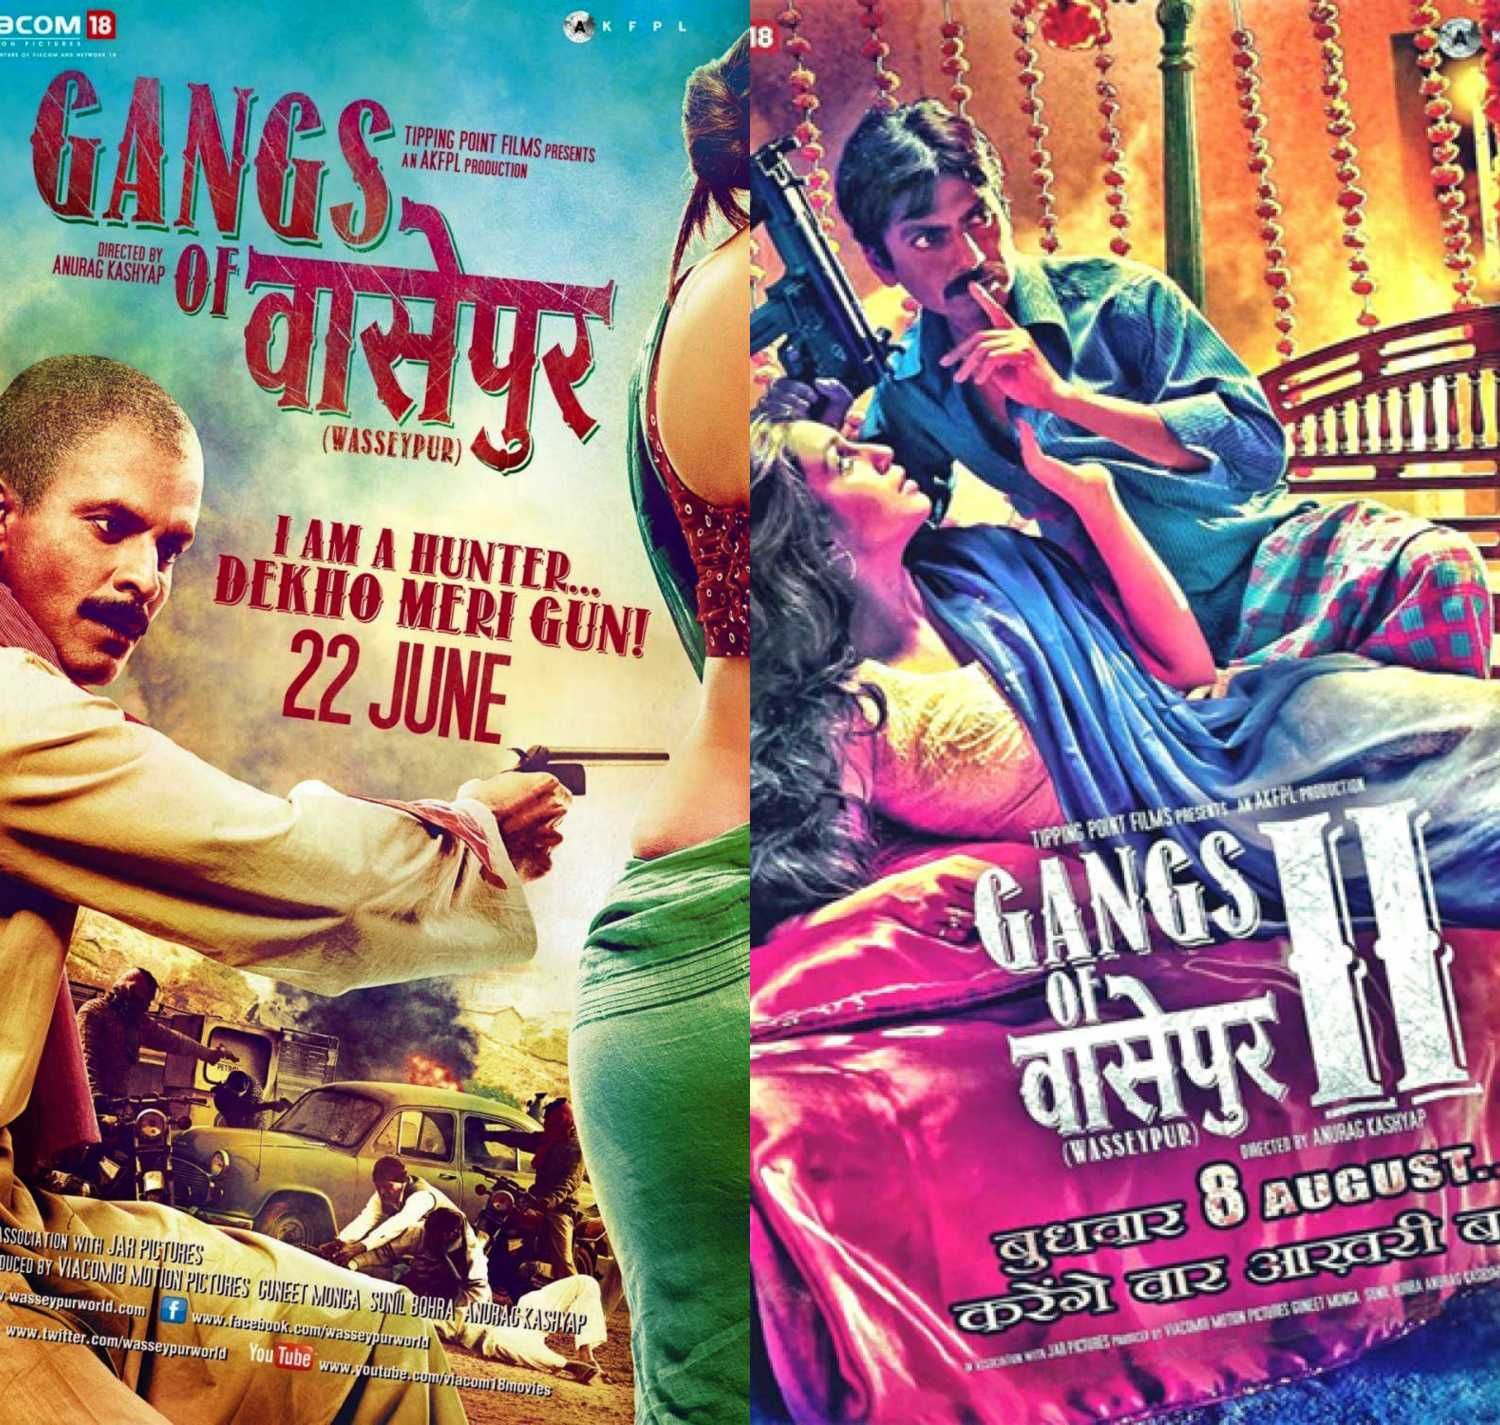 सदी की 100 बेहतरीन फिल्मों में शामिल हुई अनुराग कश्यप की 'गैंग्स ऑफ वासेपुर' !